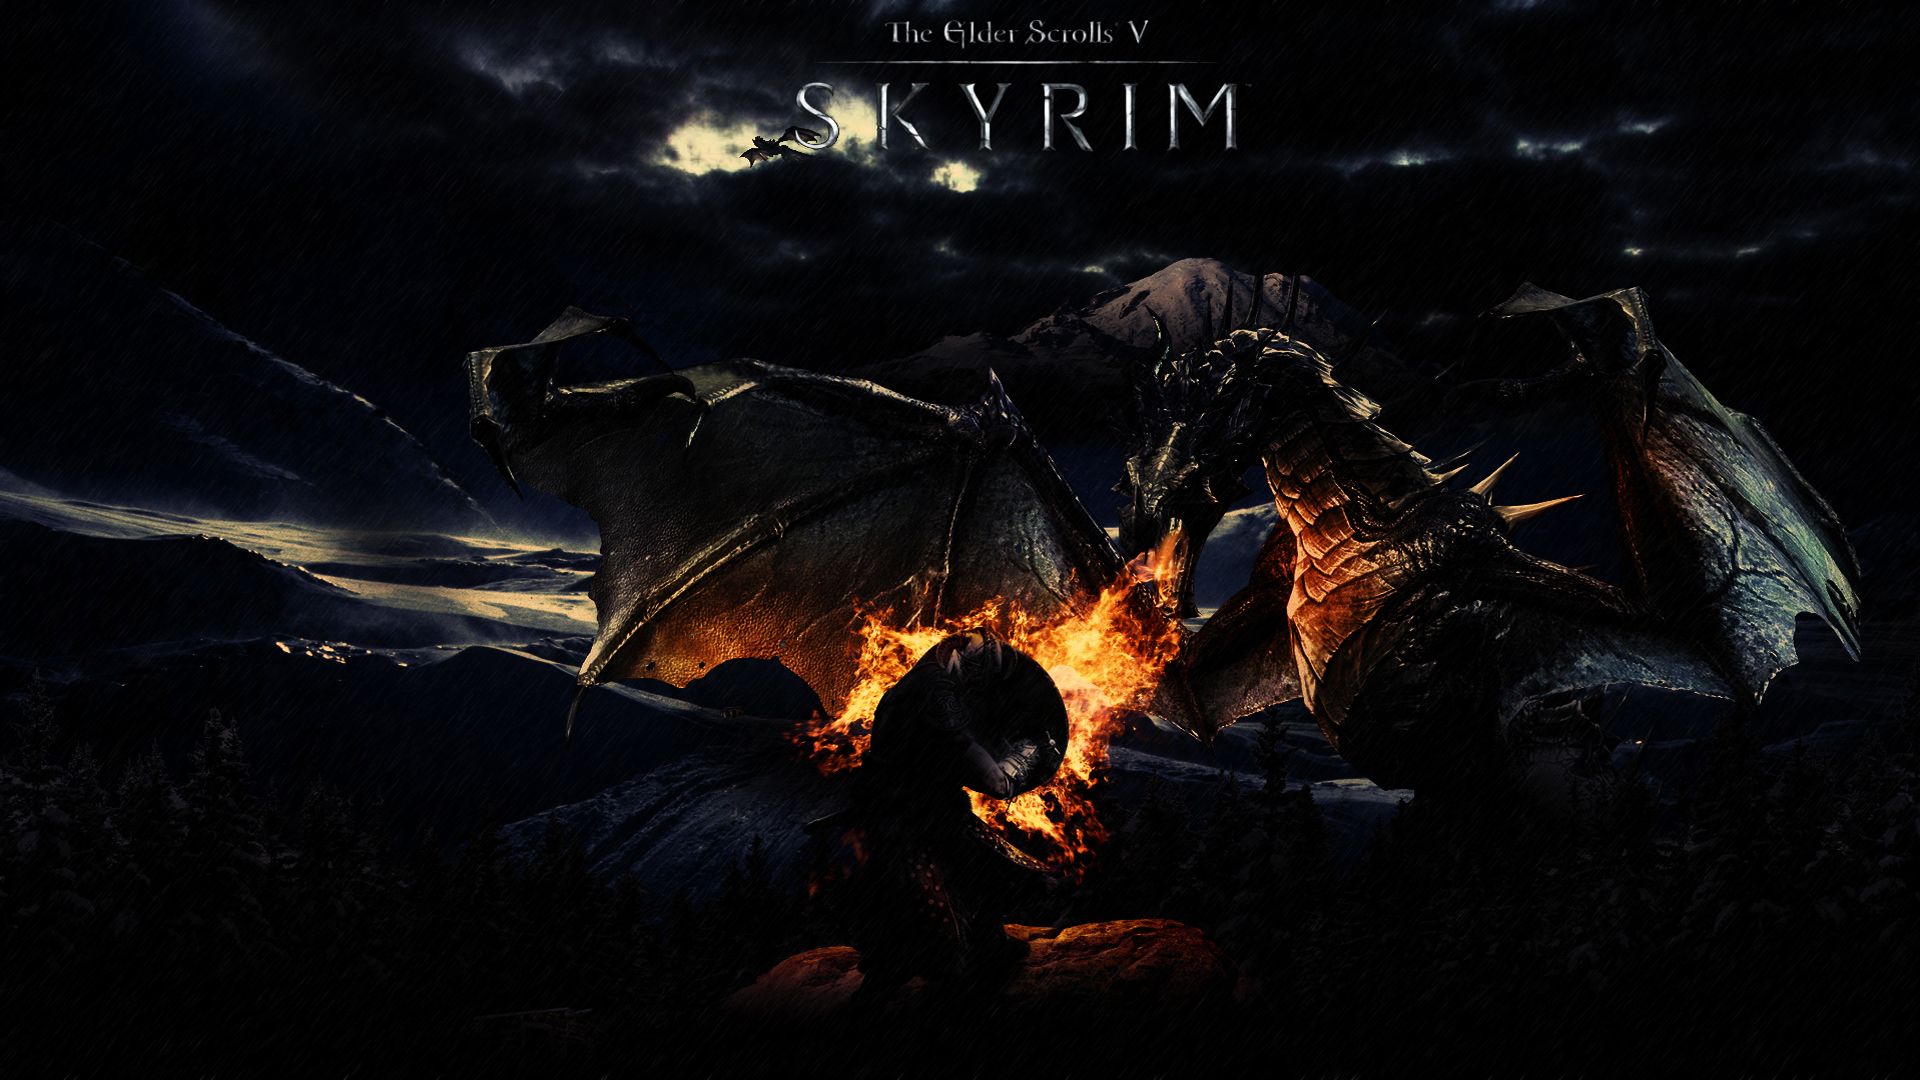 Tải game miễn phí: Hãy trải nghiệm trò chơi Skyrim nhưng không cần phải trả bất kỳ chi phí nào. Tải game miễn phí ngay hôm nay và khám phá thế giới huyền bí của Skyrim.